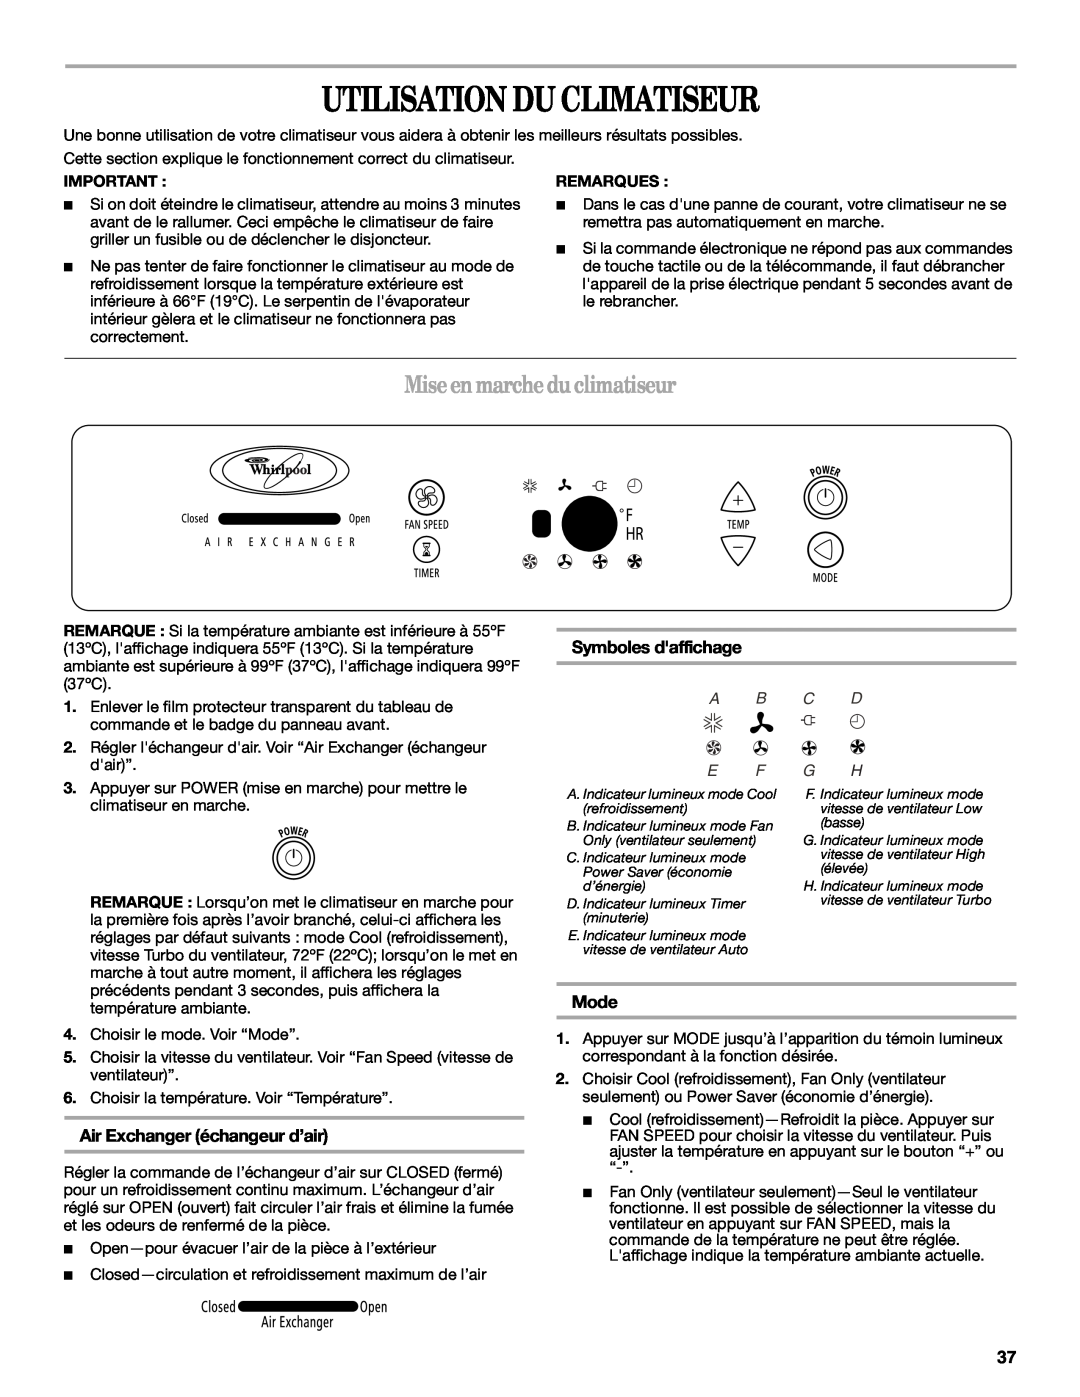 Whirlpool ACS088PR0 Utilisation Du Climatiseur, Miseenmarchedu climatiseur, Symboles daffichage, Mode, A B C D E F G H 